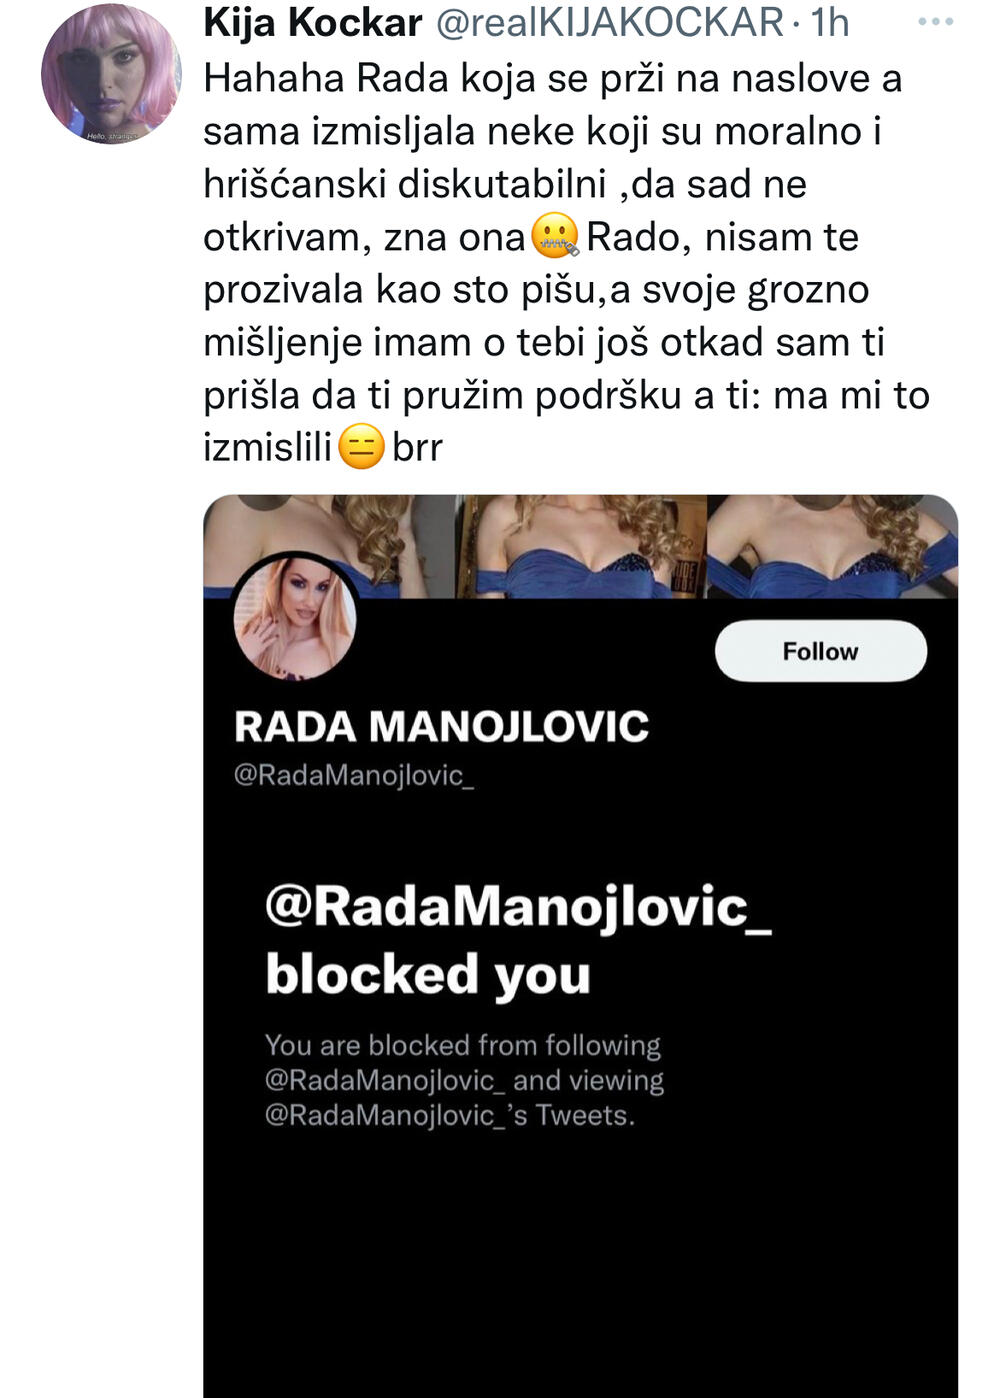 Rada Manojlović, Kristina Kija Kockar